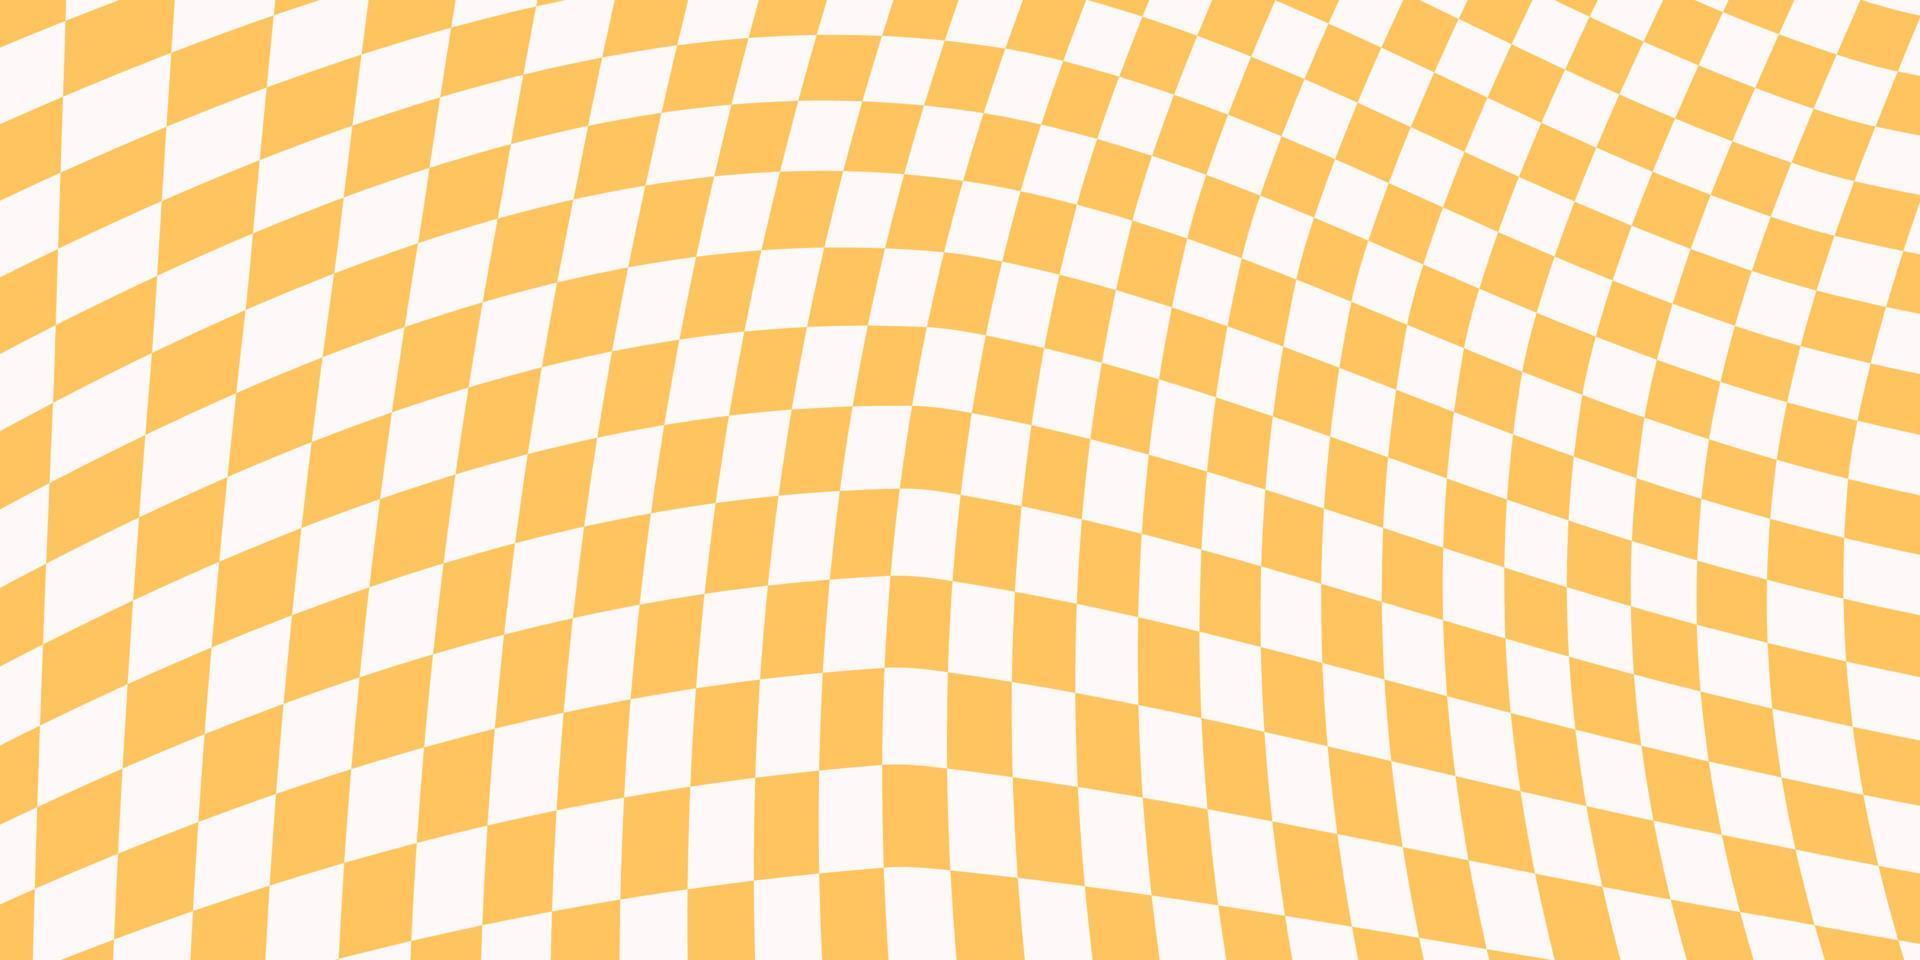 sfondo orizzontale a scacchi con quadrati gialli e bianchi distorti. banner astratto alla moda con distorsione. illustrazione vettoriale